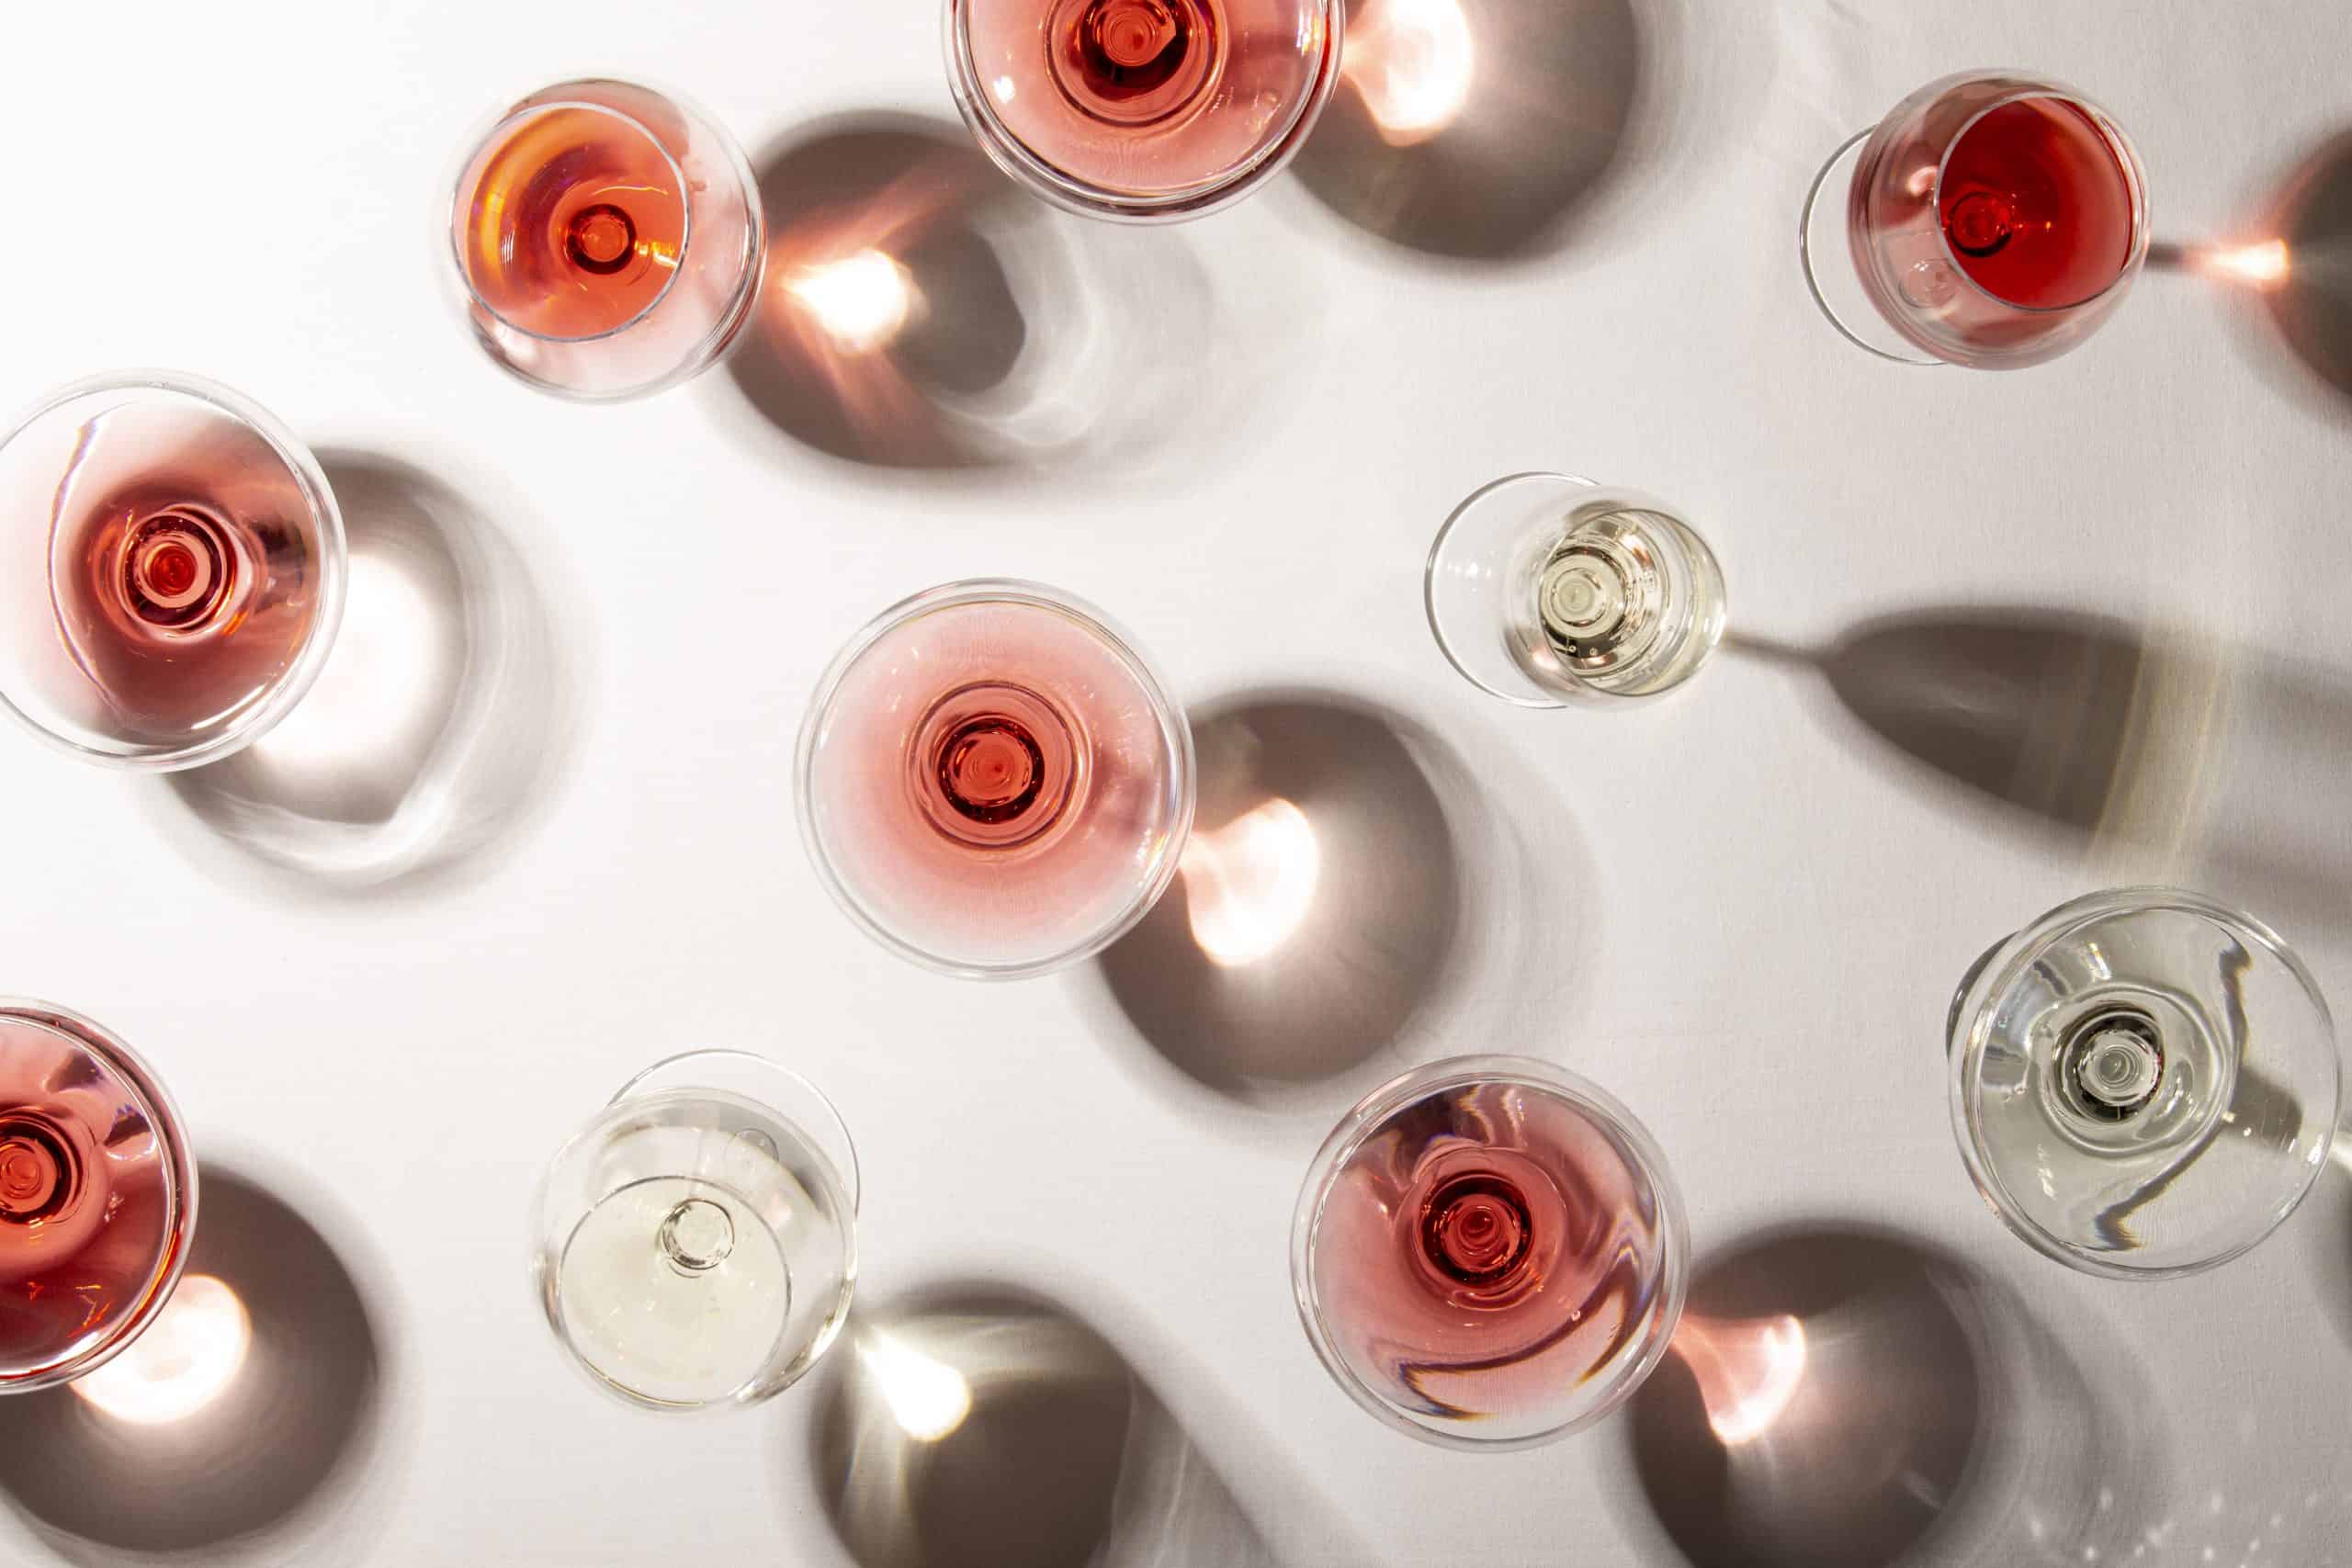 La guerra dei rosé: Provenza contro Bordeaux. Ma per i produttori è solo un